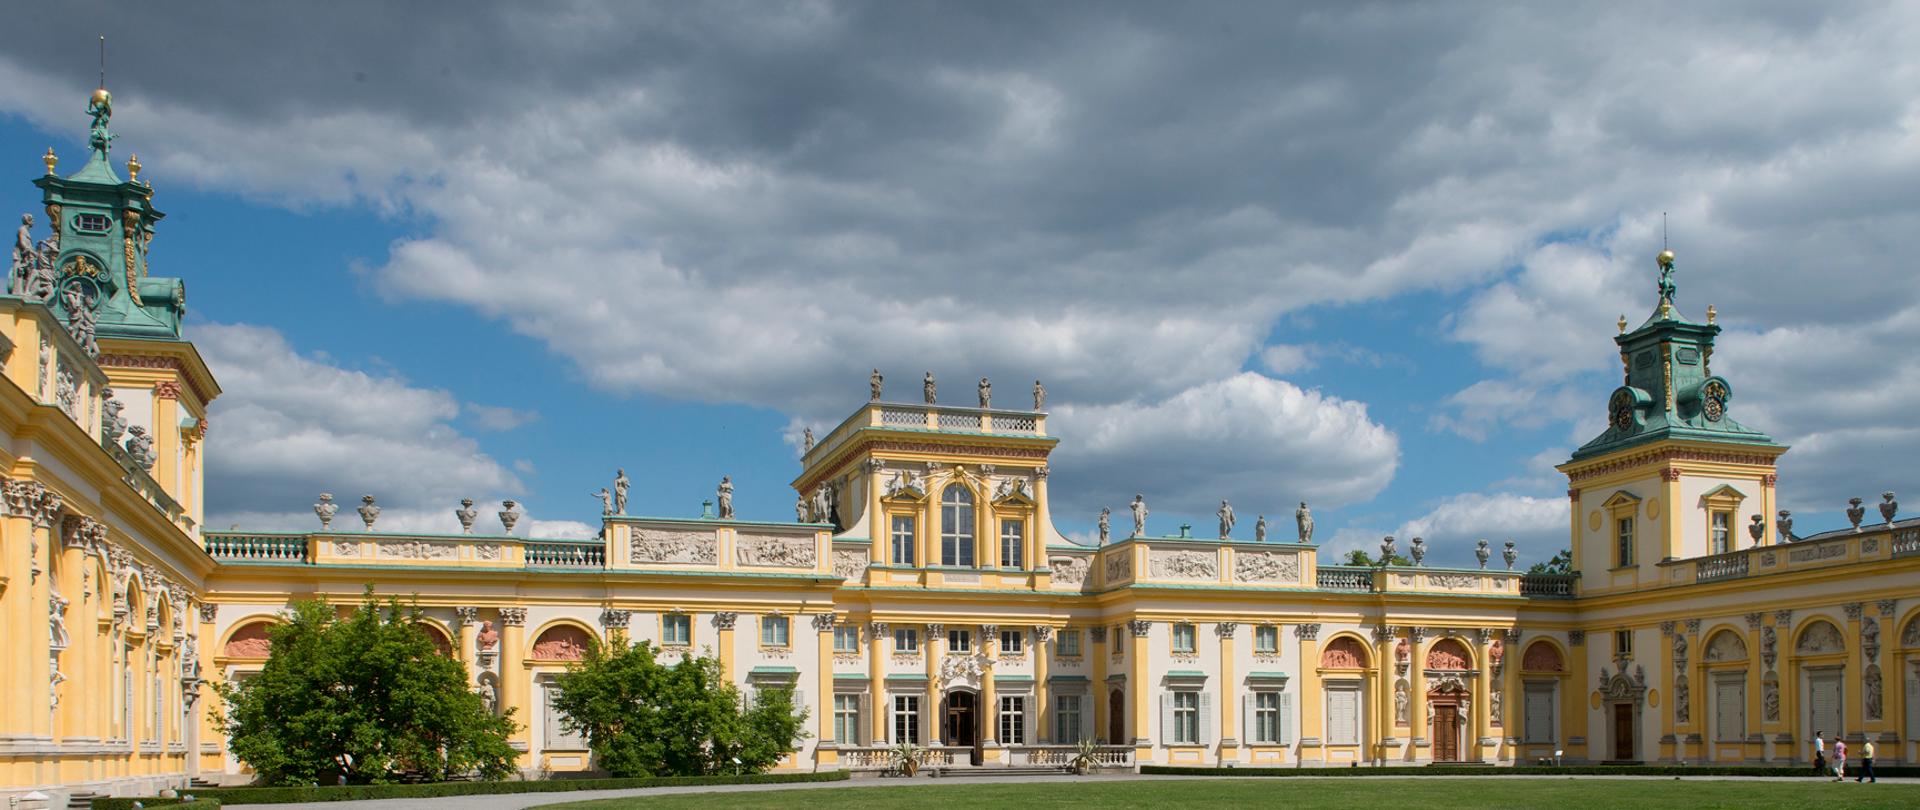 Pałac Króla Jana III w Wilanowie, fot. Wojciech Holnicki 